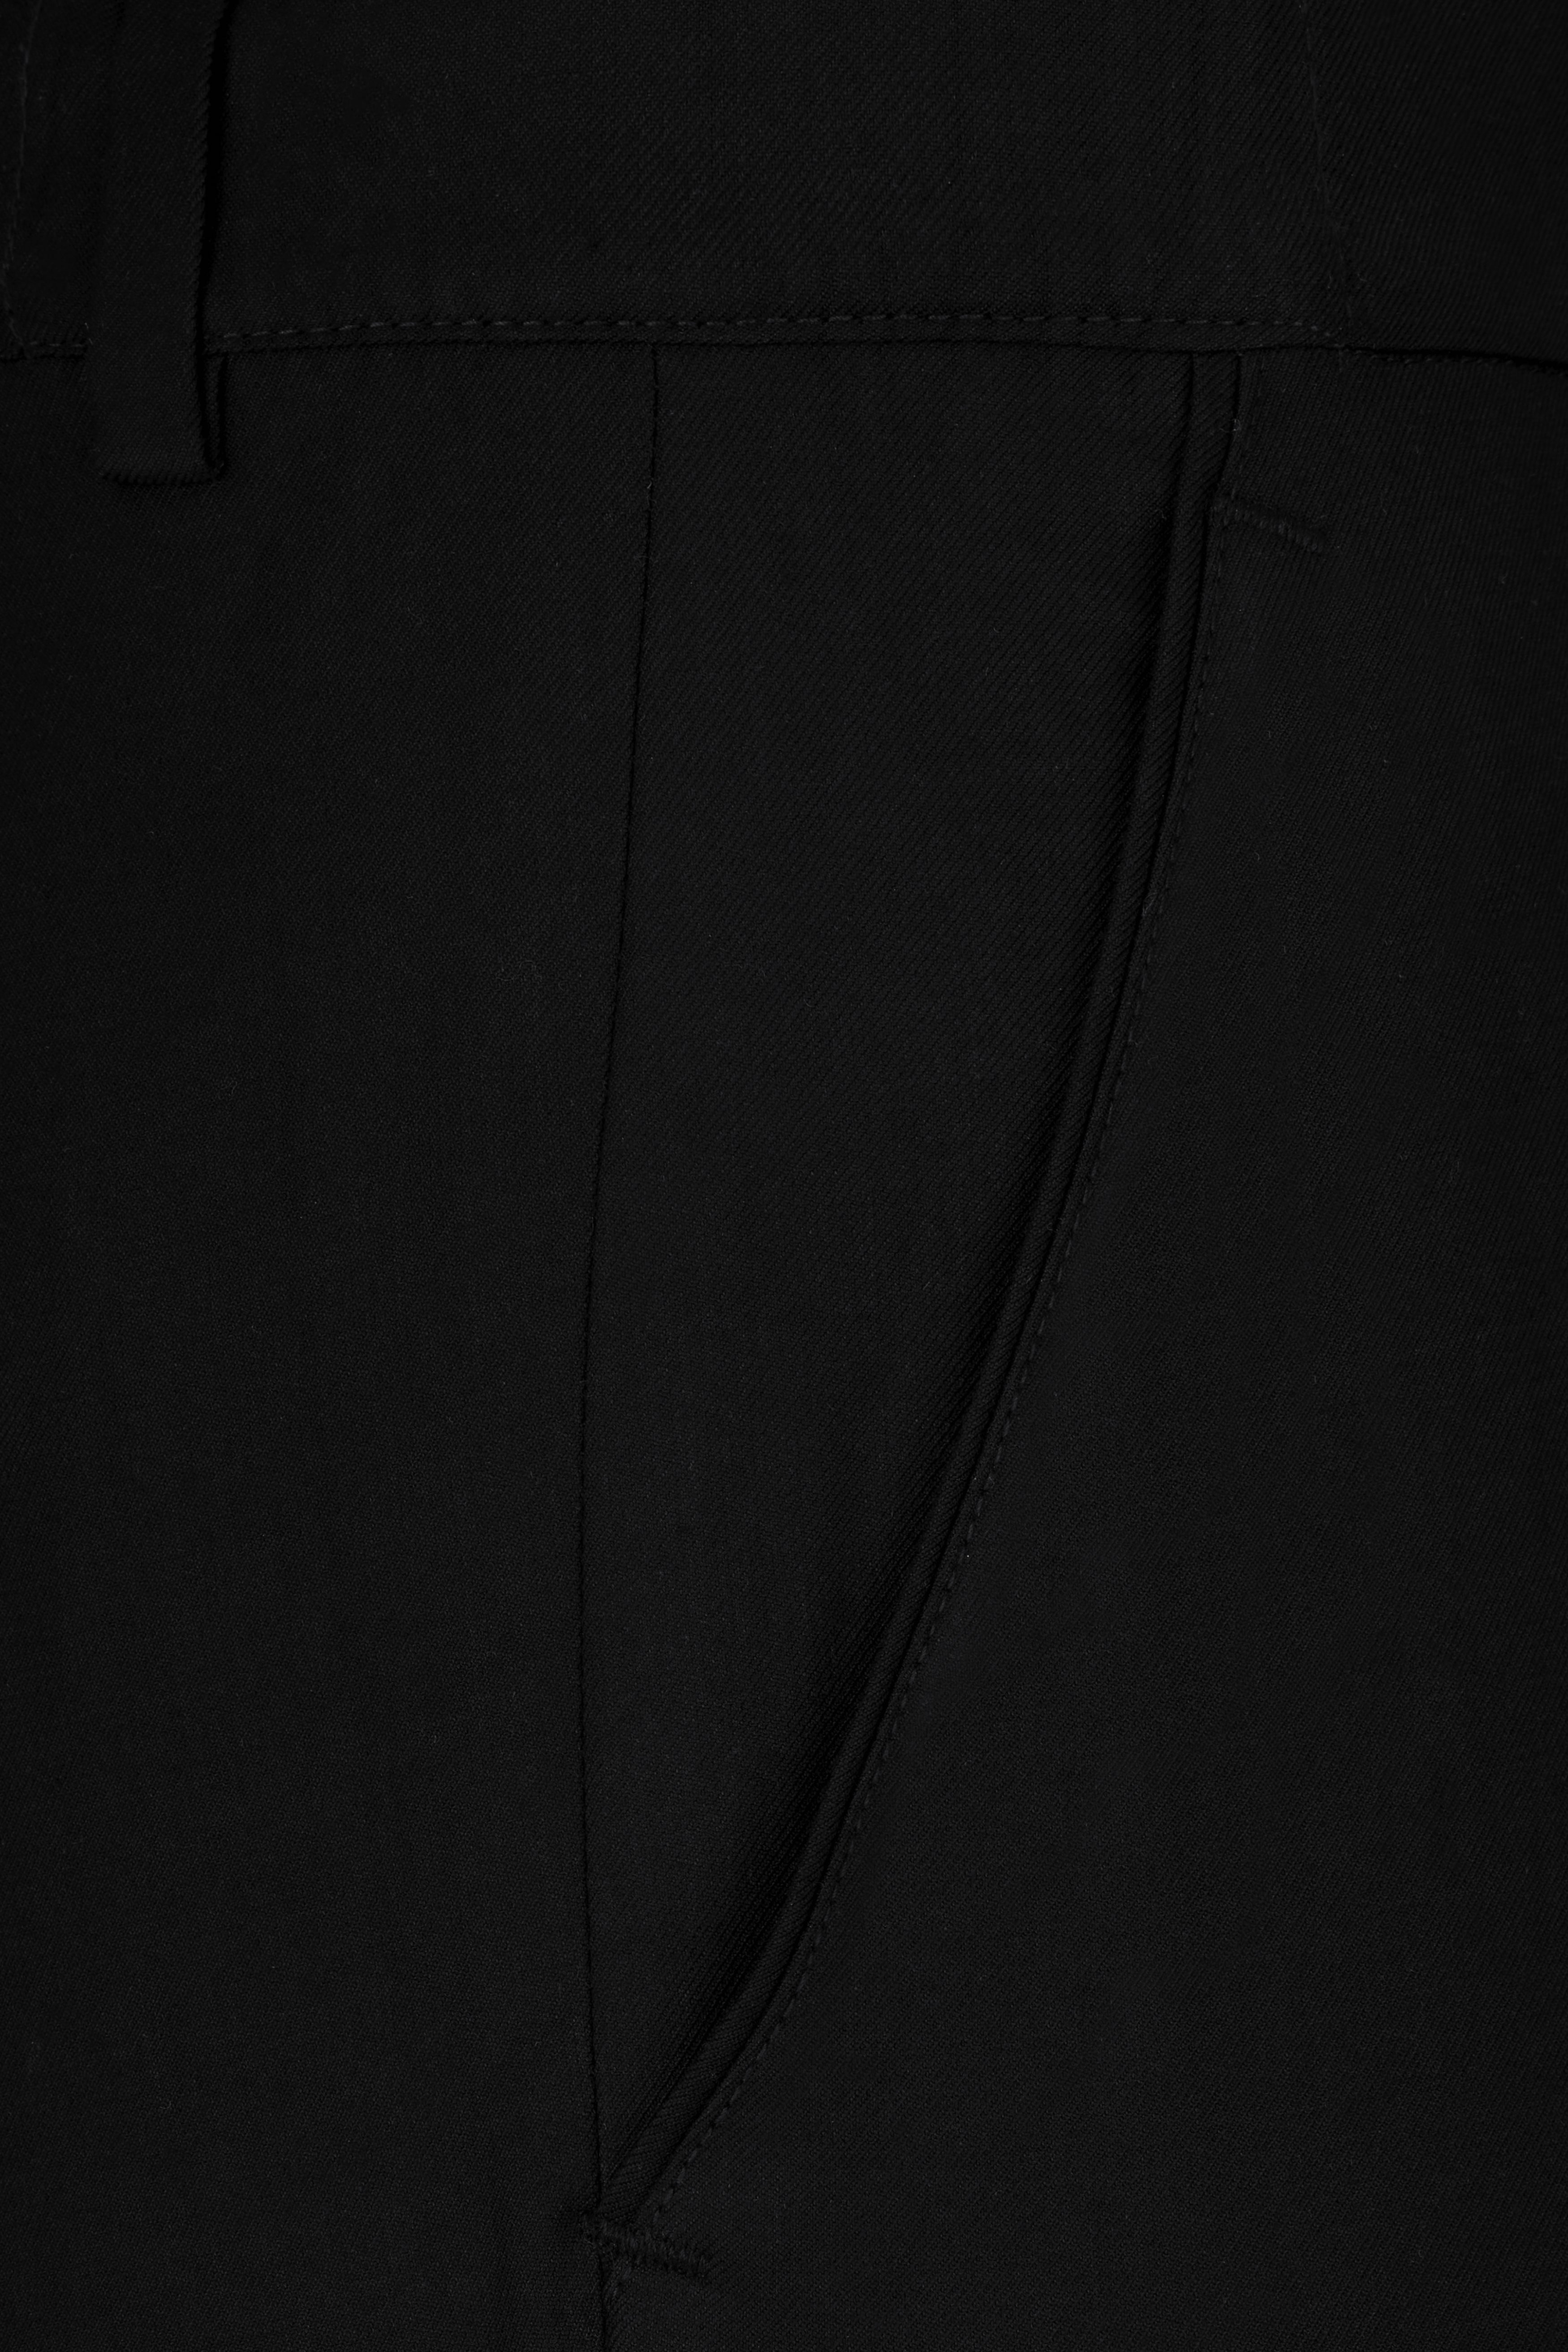 Jade Black Tikki Work Wool Rich Designer Suit ST2809-SB-D480-36, ST2809-SB-D480-38, ST2809-SB-D480-40, ST2809-SB-D480-42, ST2809-SB-D480-44, ST2809-SB-D480-46, ST2809-SB-D480-48, ST2809-SB-D480-50, ST2809-SB-D480-52, ST2809-SB-D480-54, ST2809-SB-D480-56, ST2809-SB-D480-58, ST2809-SB-D480-60